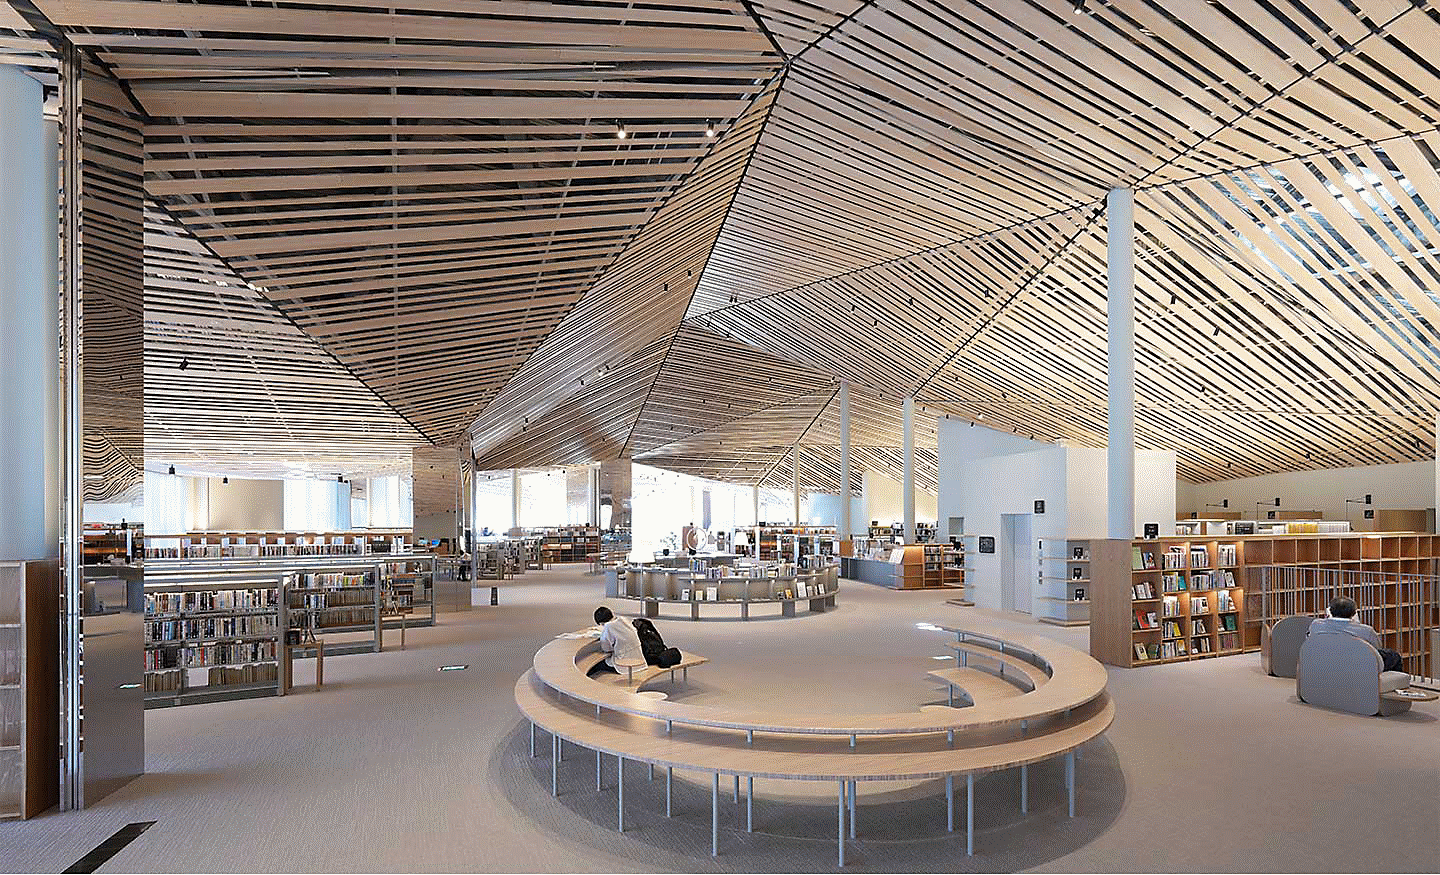 Obrázok interiéru veľkej knižnice s ozdobným dizajnom pozostávajúcim z mnohých rovných drevených dosiek na strope – rozlíšenie je zachované na celej ploche obrazovky